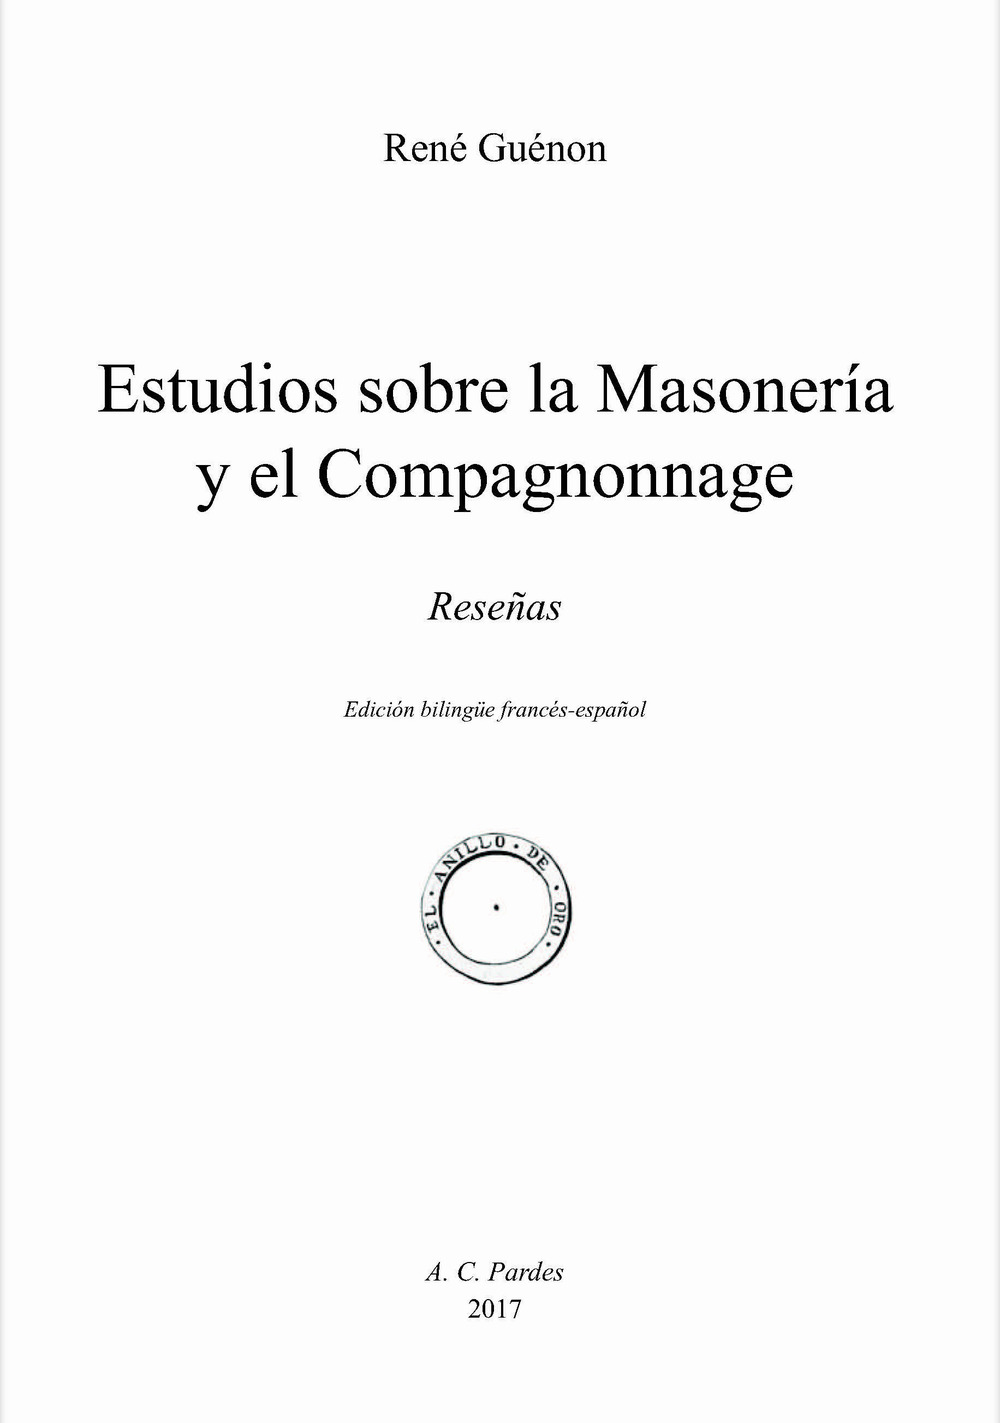 Estudios sobre la Masonería y el Compagonnage. Reseñas